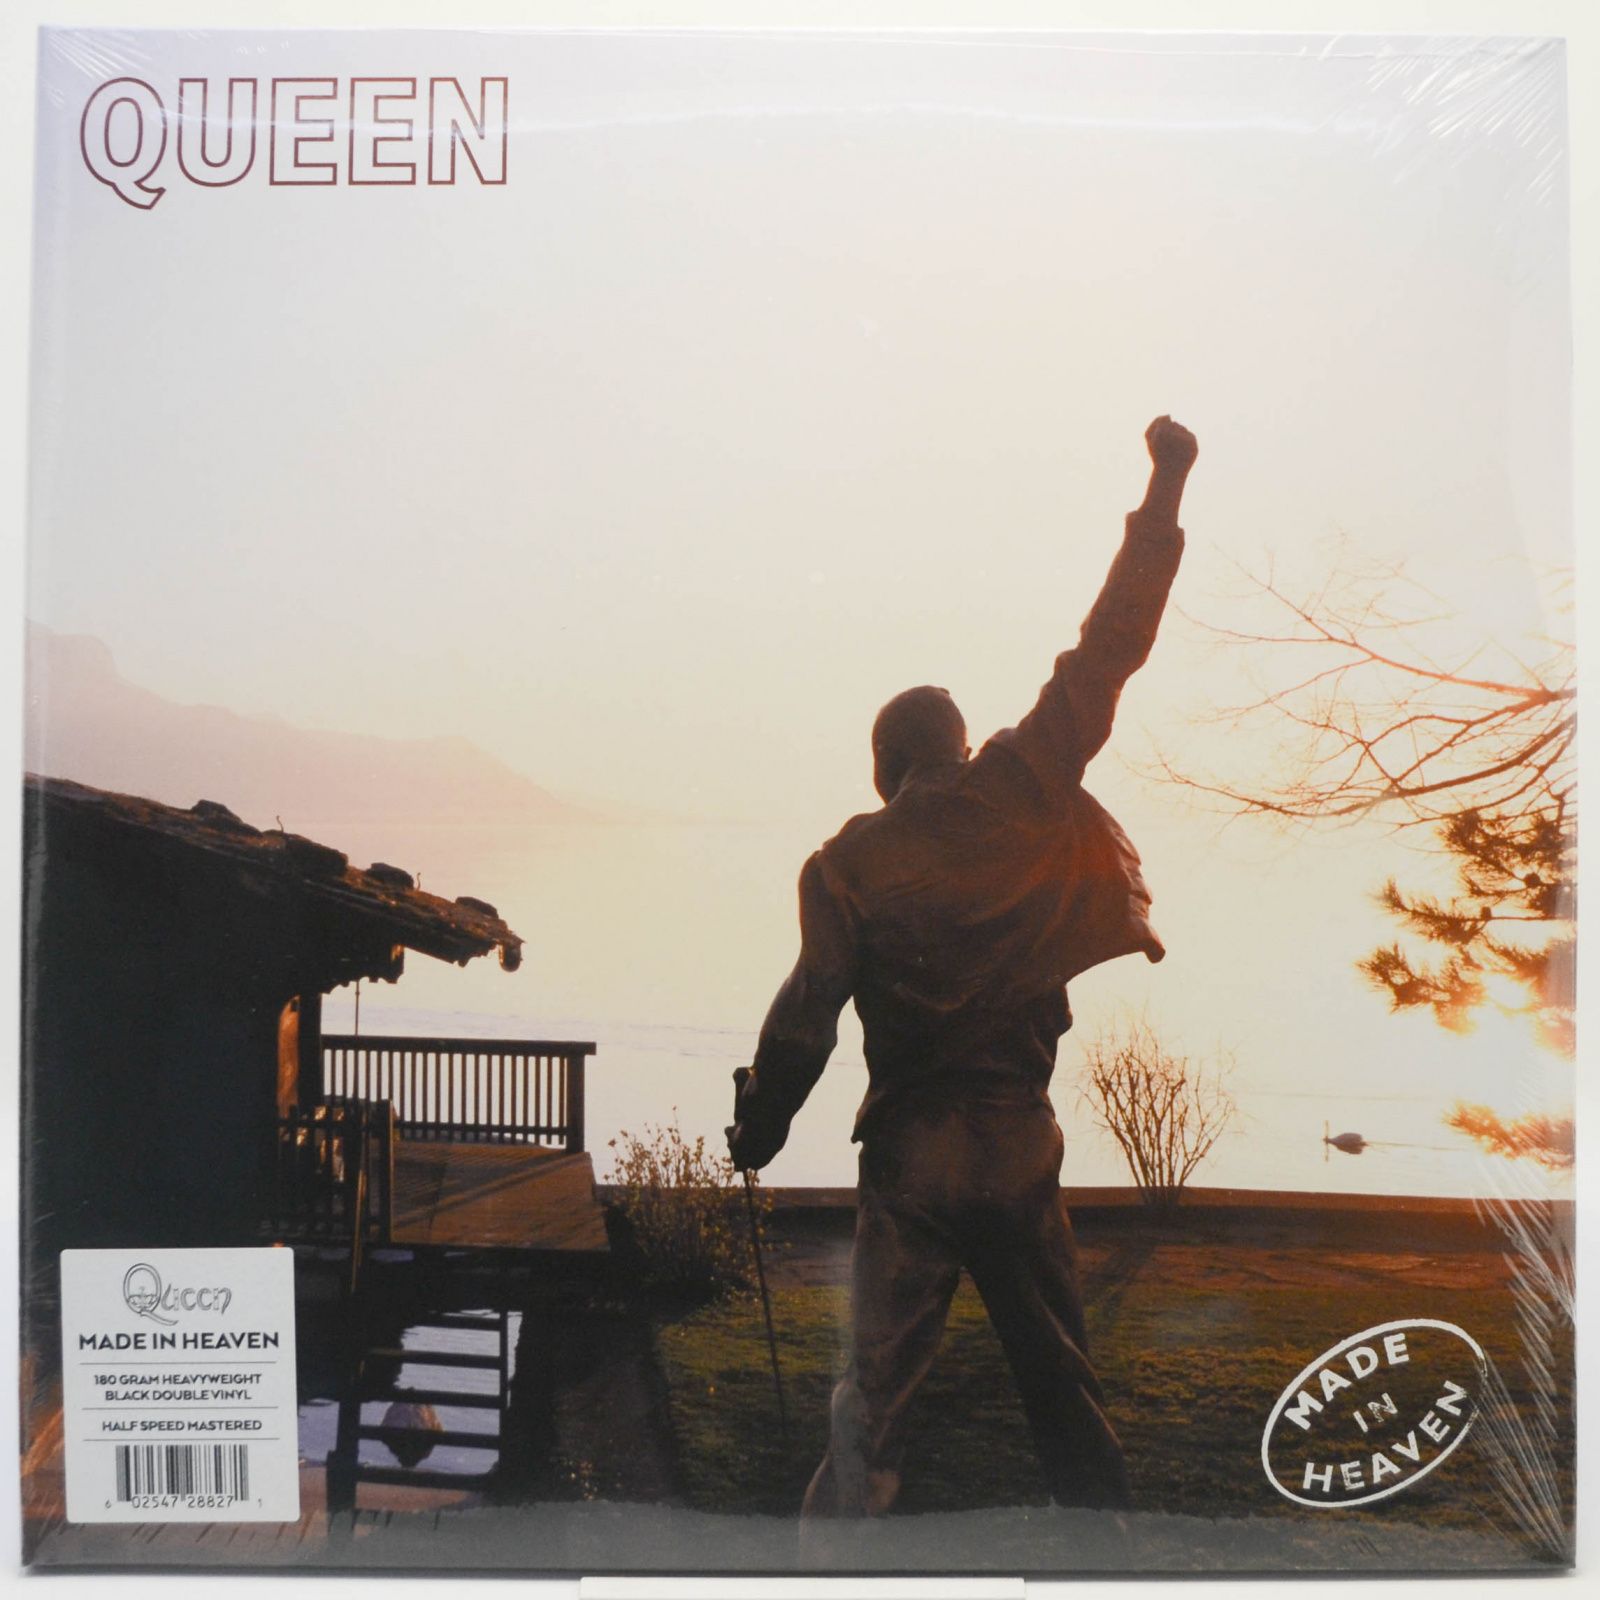 Queen — Made in Heaven (2LP), 1995